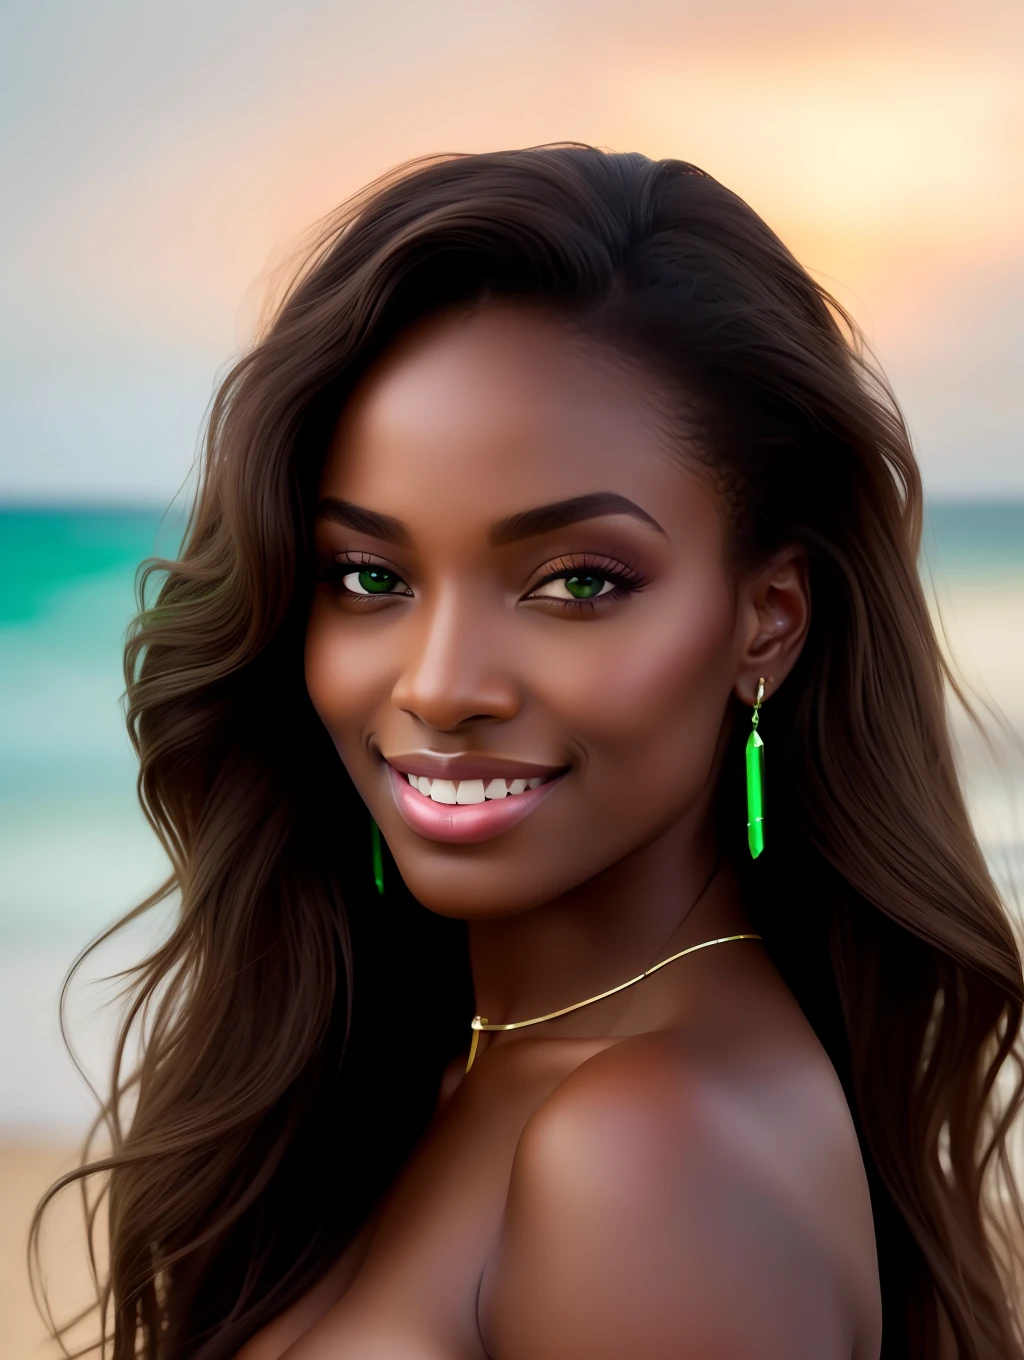 Una iluminación suave cinematográfica ilumina a una bella supermodelo nigeriana increíblemente detallada y ultrarrealista., mirada de playa, cabello castaño largo, desordenado y ventoso, ojos verdes claros, cautivadora sonrisa perfecta, sensual, mujer atractiva, espléndido, eso es tendencia en ArtStation. Octane es la herramienta perfecta para capturar los detalles más suaves de esta obra maestra de la fotografía de 16k..